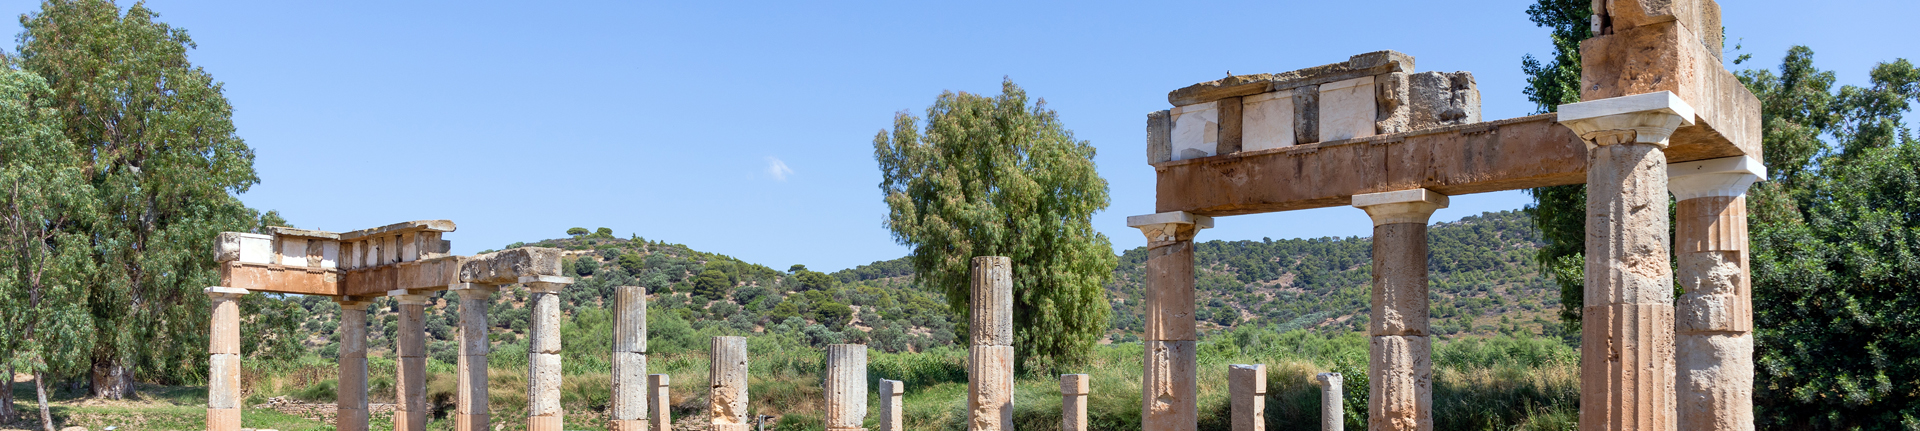 The Temple of Artemis at Brauron in Attica, Greece.